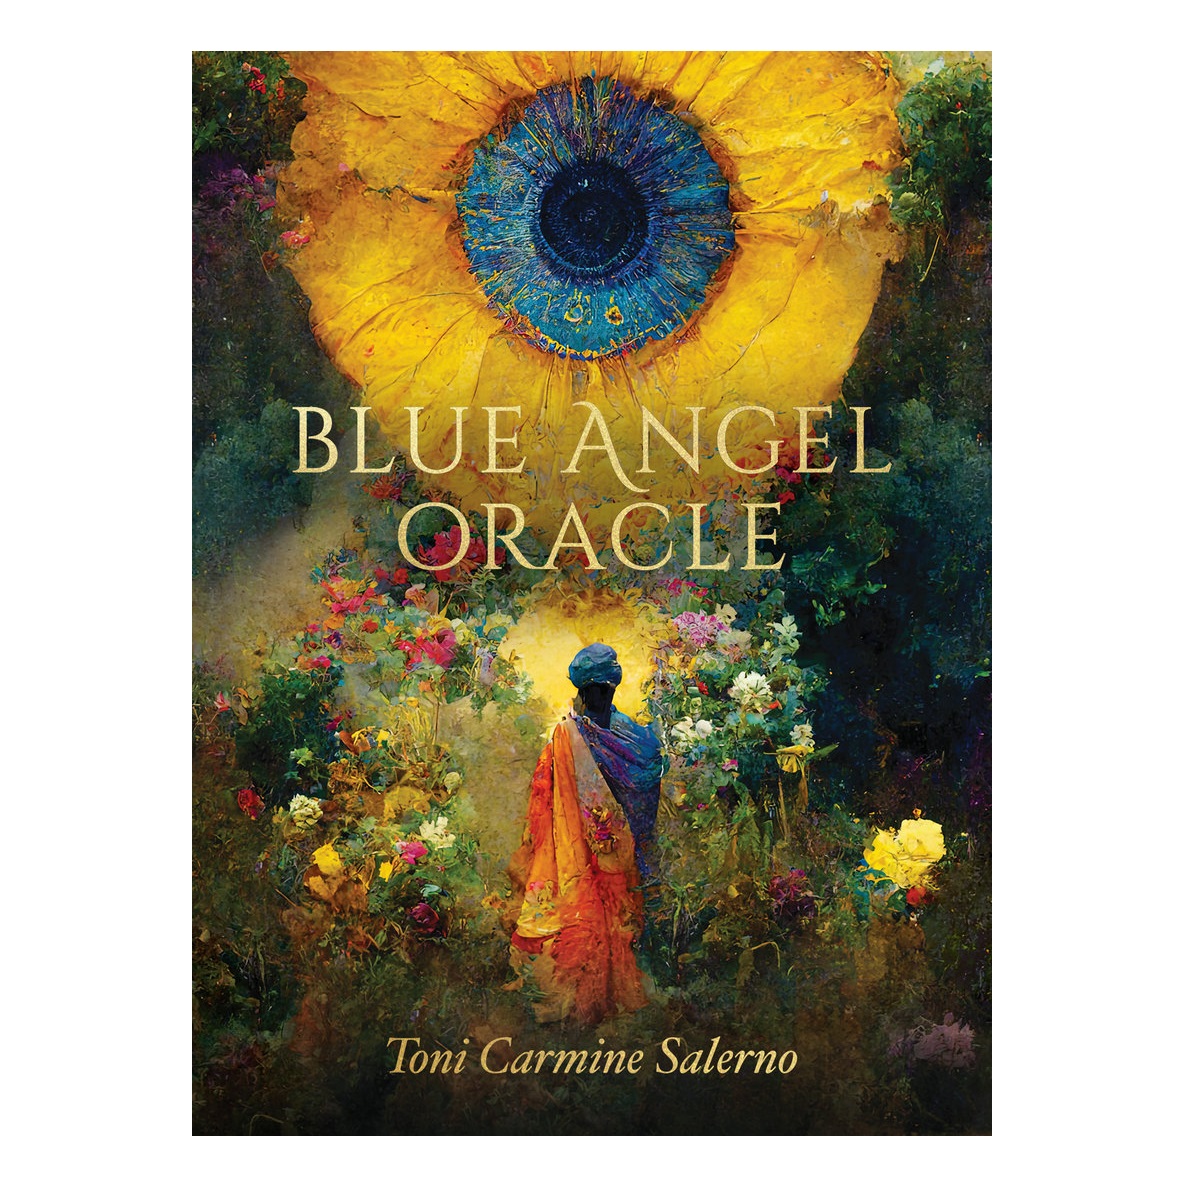 

Оракул Синего Ангела, второе издание "Новая Земля" (Blue Angel Oracle - New Earth Edition)